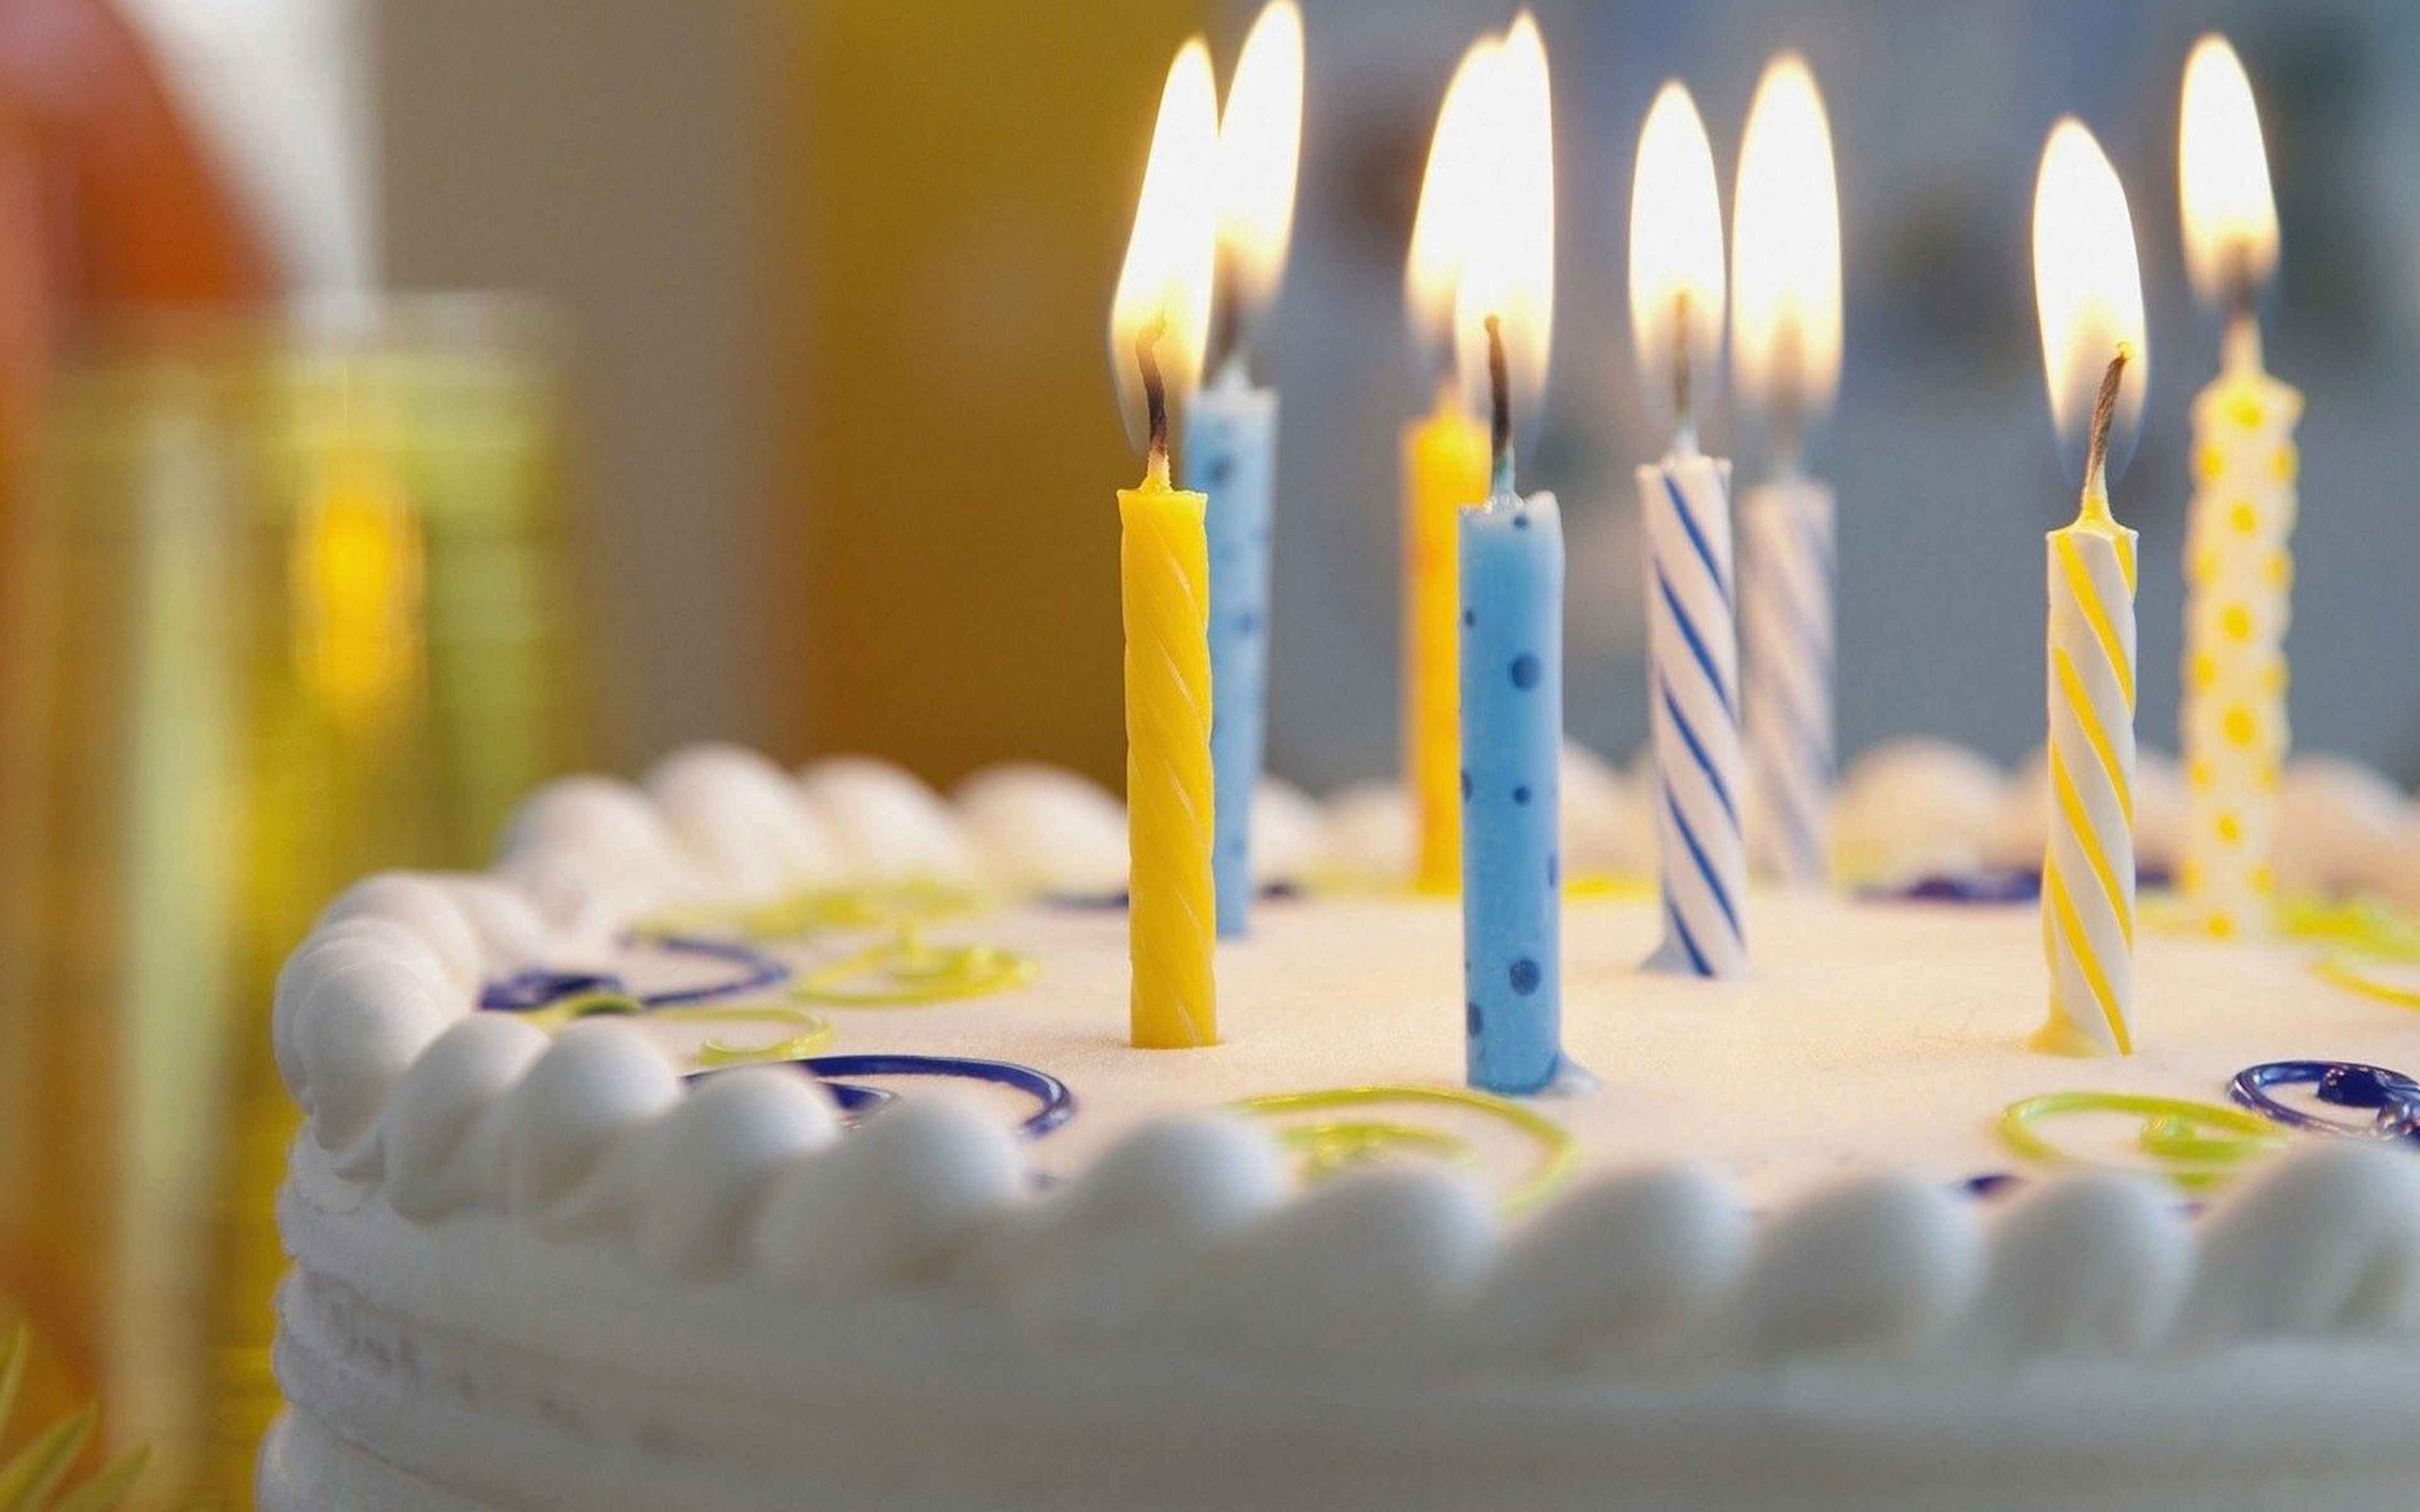 Cake candle. Торт со свечками. Тортик с днем рождения. Свечи для торта. Свеча в торт "с днем рождения".